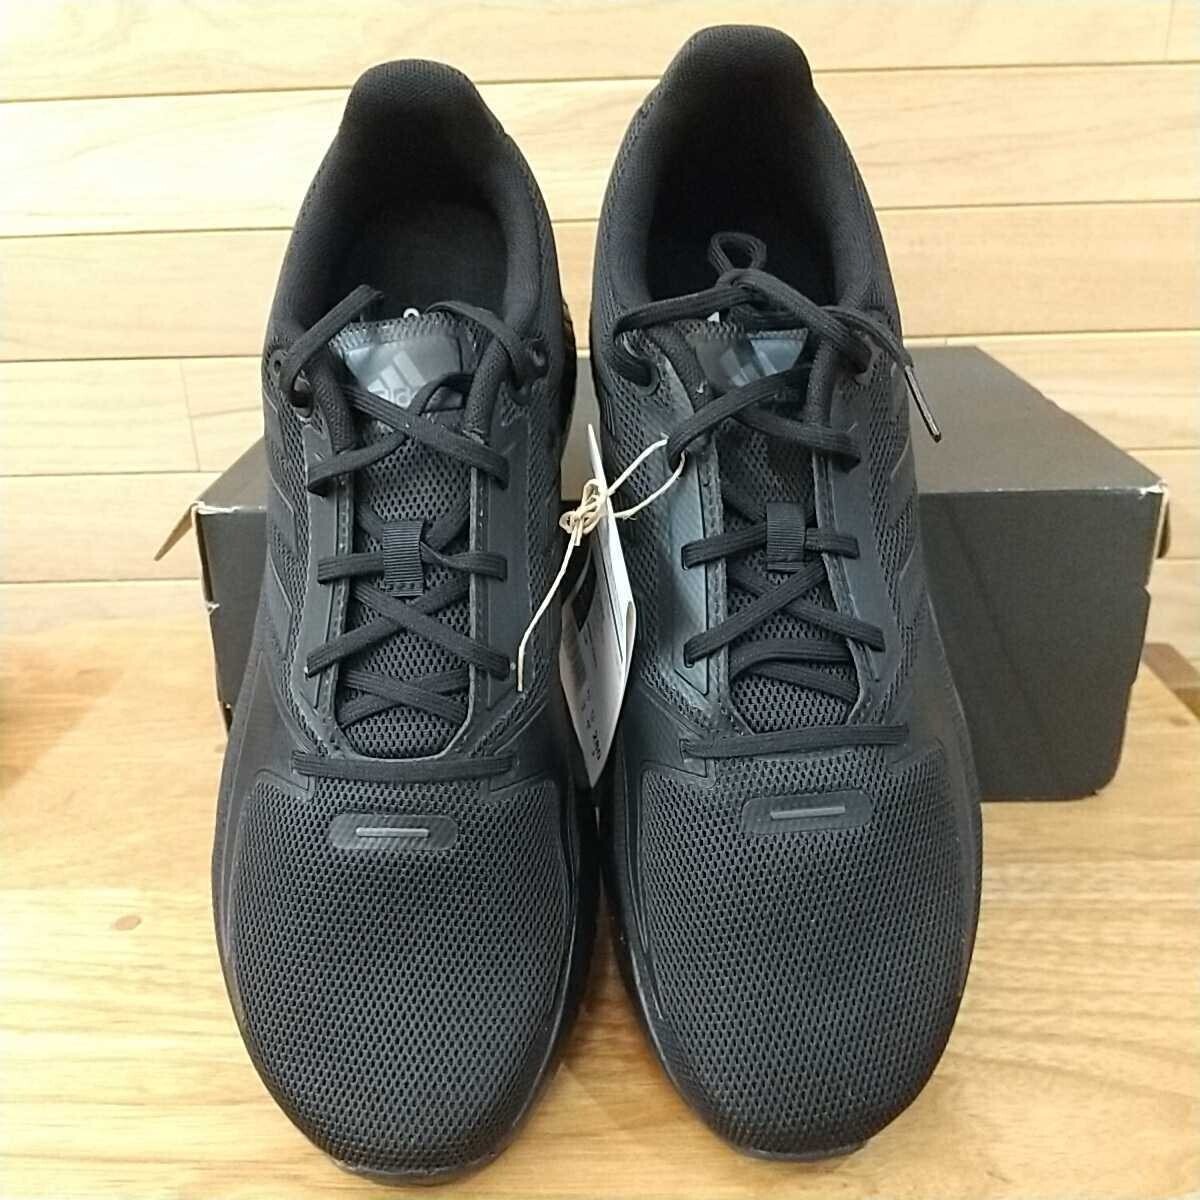 27.5cm новый товар стандартный товар adidas Adidas CORERUNNER M core Runner M FZ2808 core черный / черный мужской бег обувь 